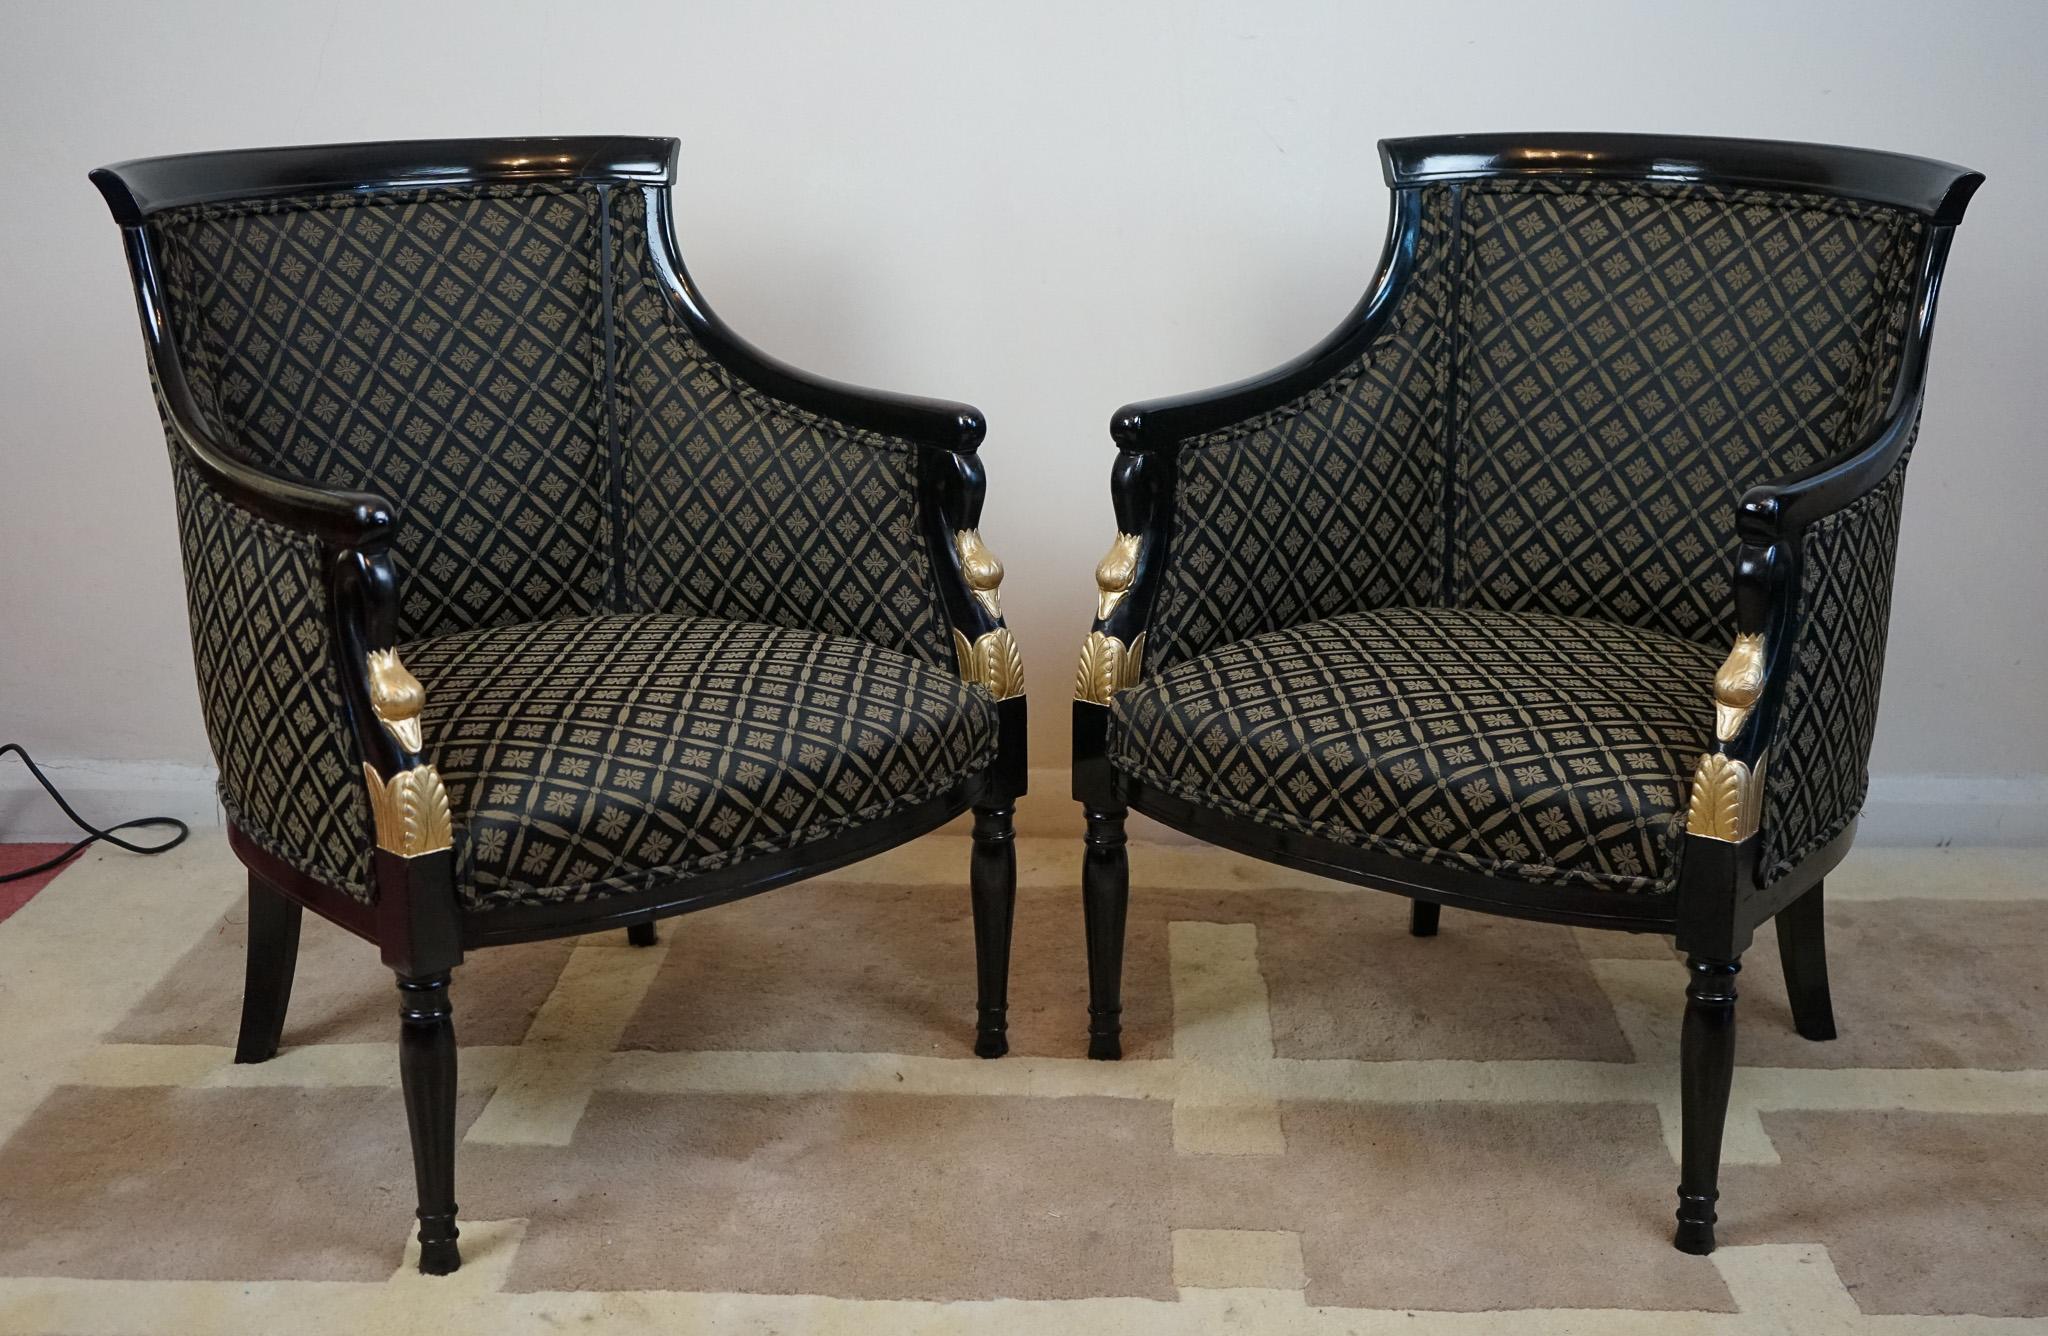 Une paire unique de fauteuils d'apparat danois de la fin du 19ème siècle, ébonisés et dorés, avec des dossiers en forme de baignoire et des accoudoirs en forme de tête de cygne. Ces fauteuils danois en forme de baignoire ont été vendus par Thomas